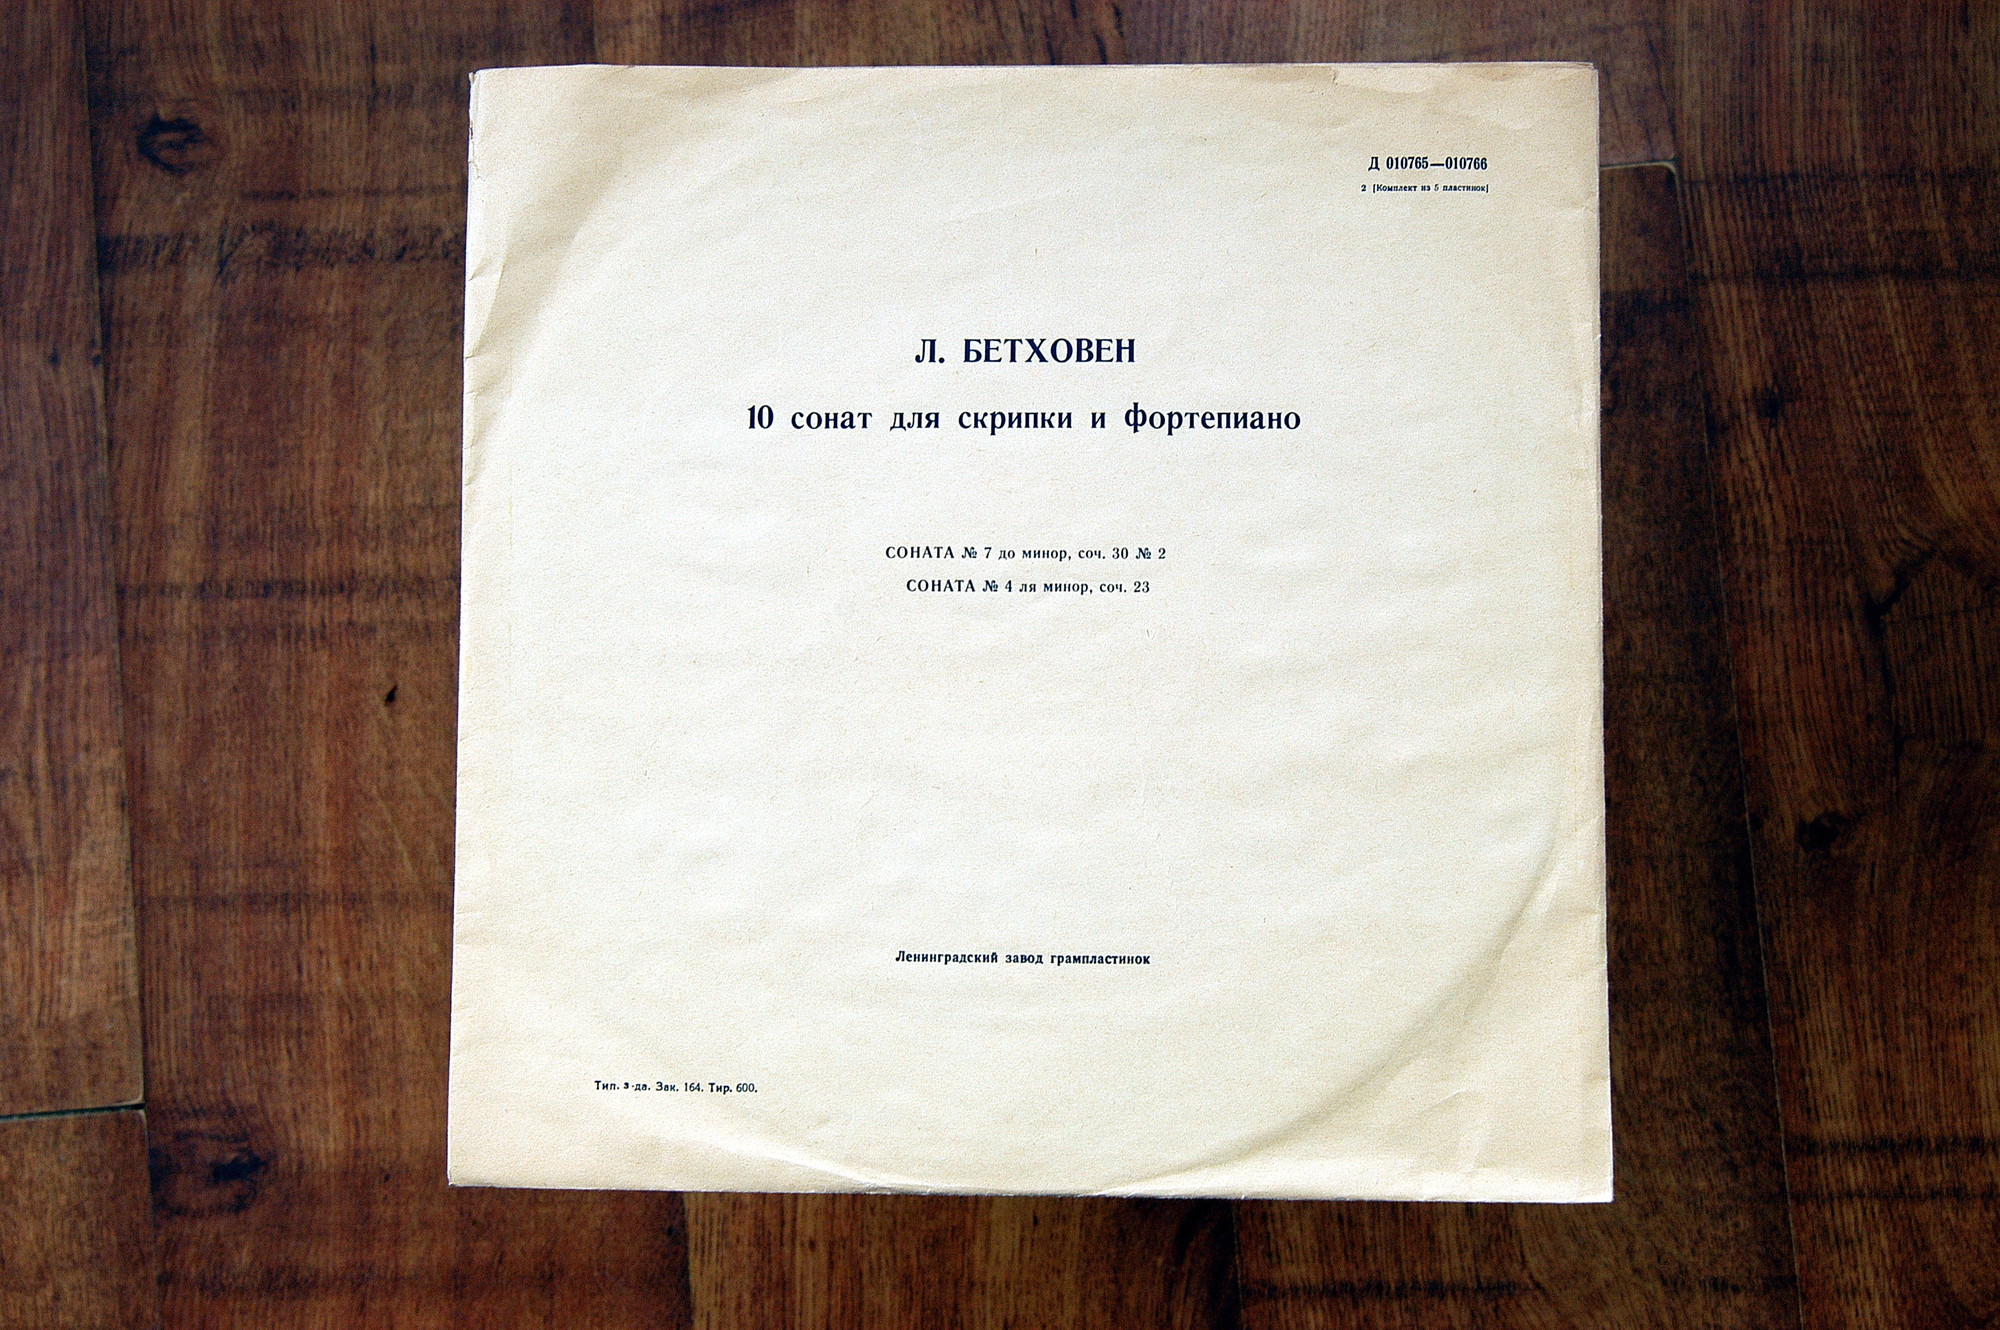 Л. Бетховен: 10 сонат для скрипки и ф-но (Д. Ойстрах, Л. Оборин)